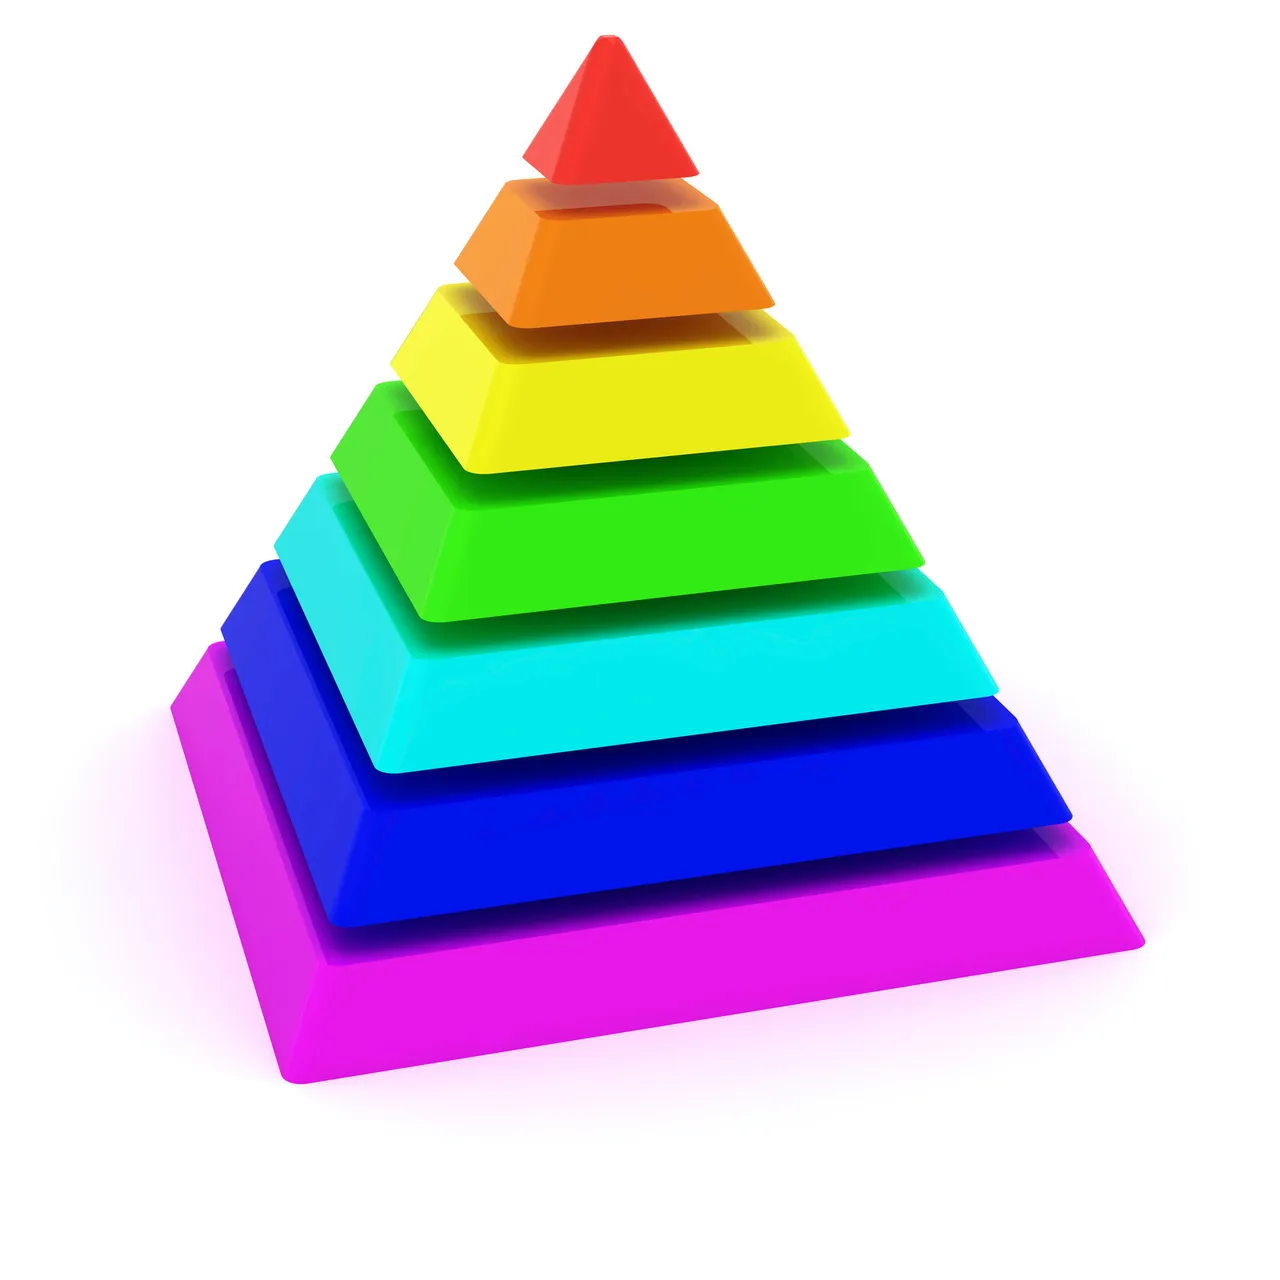 Пирамидка разноцветная на белом фоне